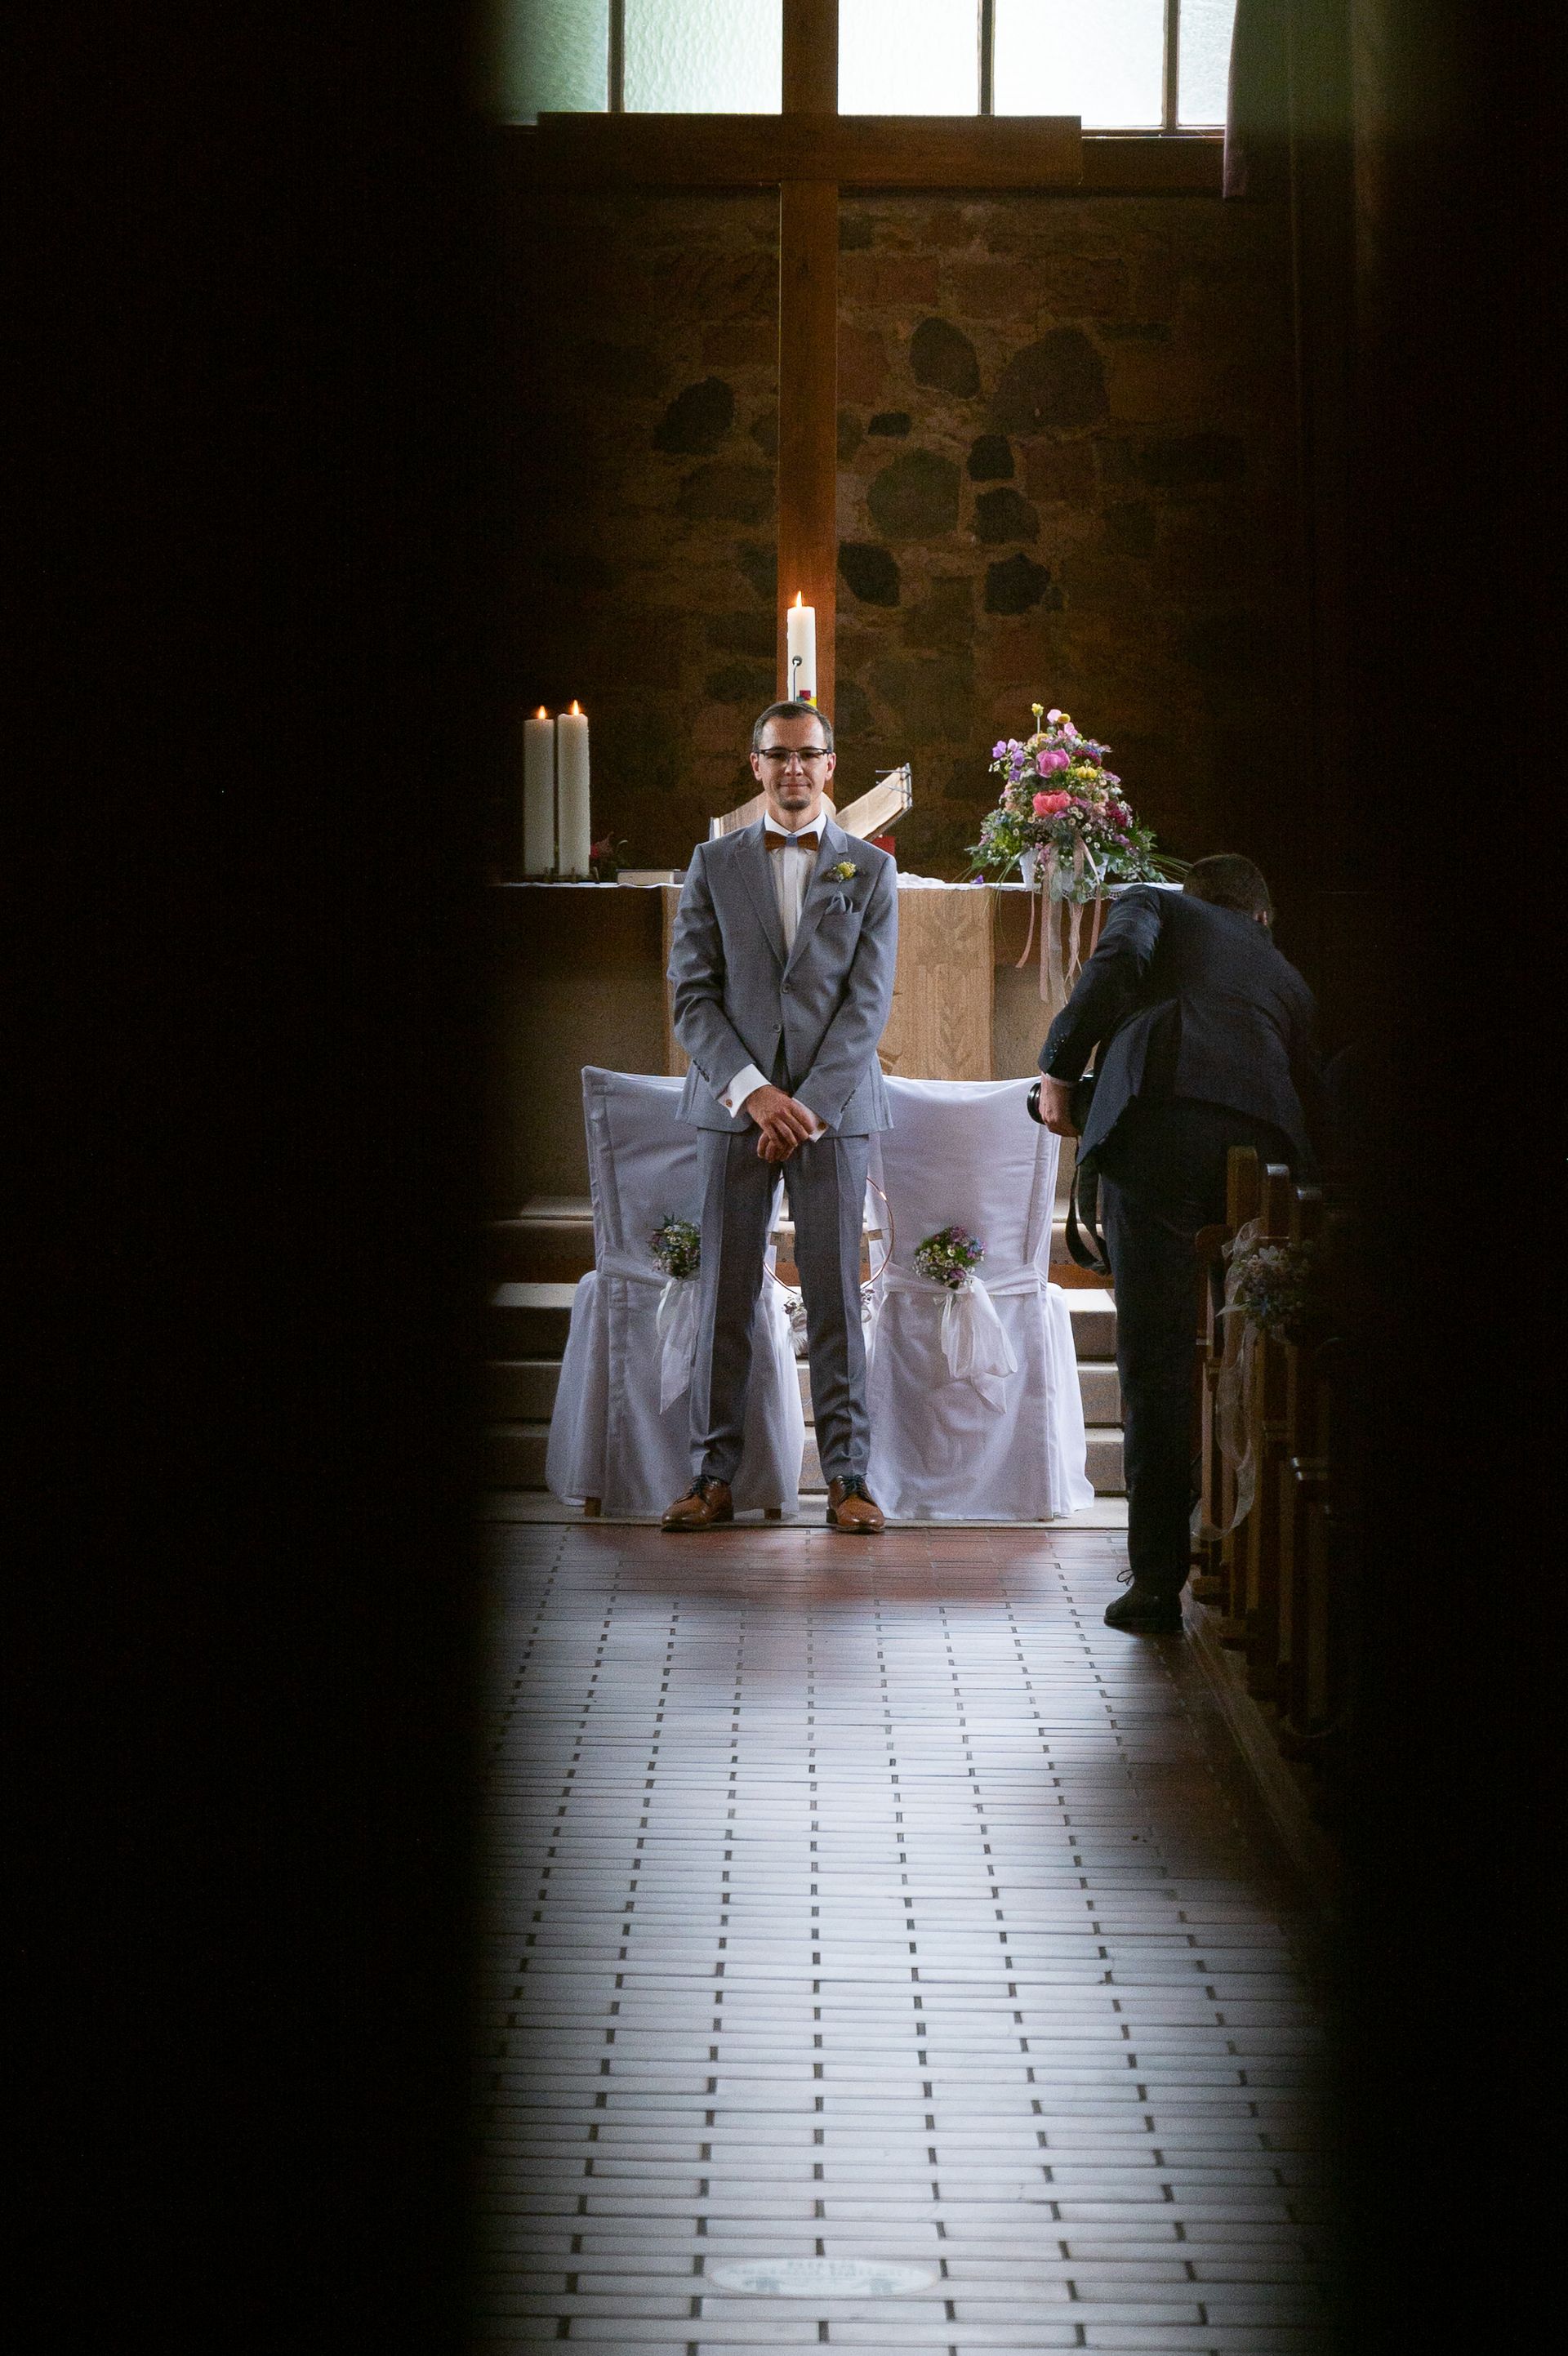 Blick durch die Kirchentür auf den am Altar wartenden Bräutigam